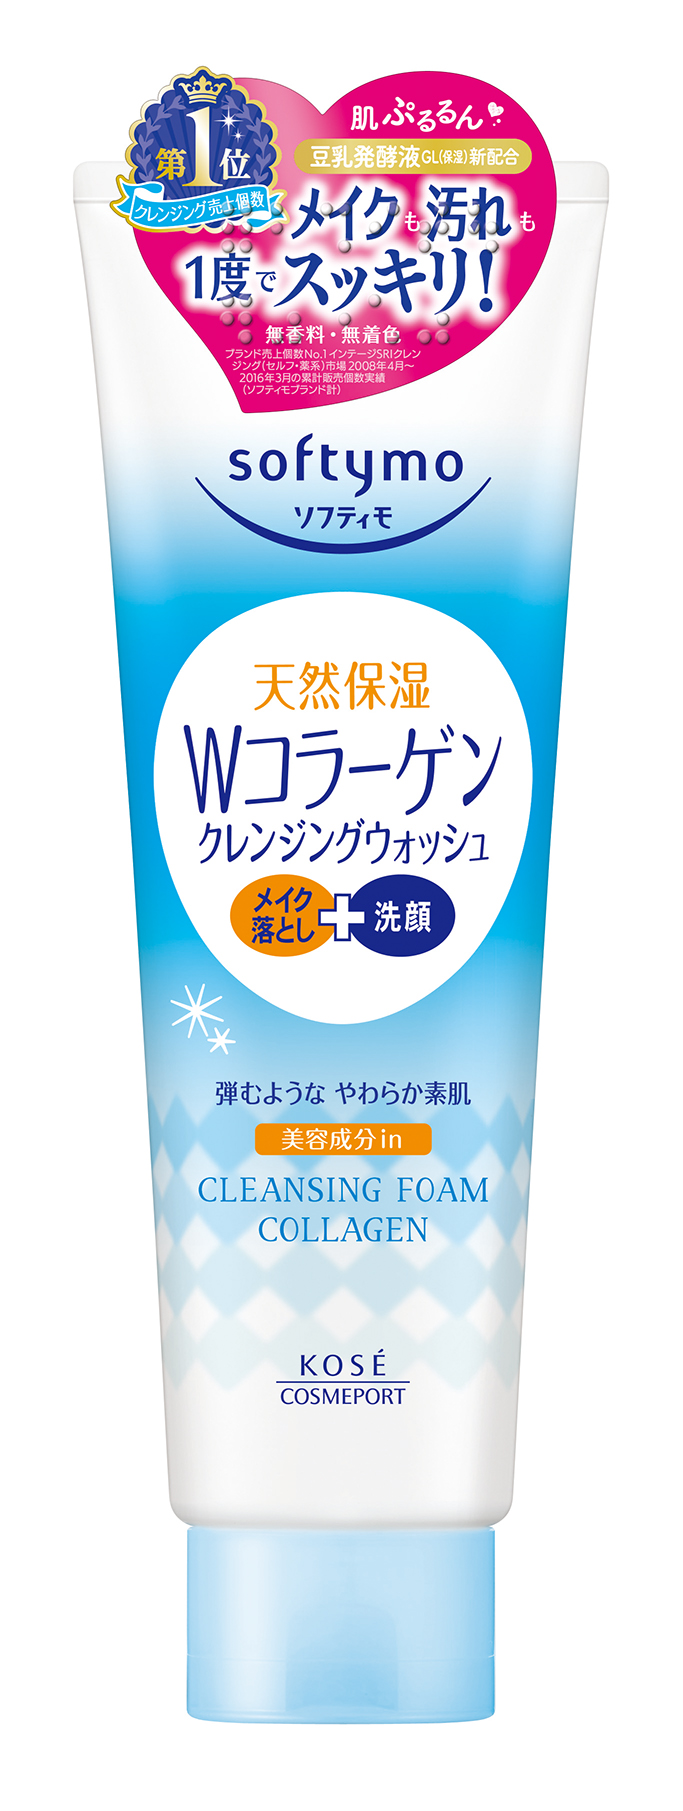 Sữa Rửa Mặt Tẩy Trang Tạo Bọt Kosé Softymo Cleansing Foam - 03759 (190g)